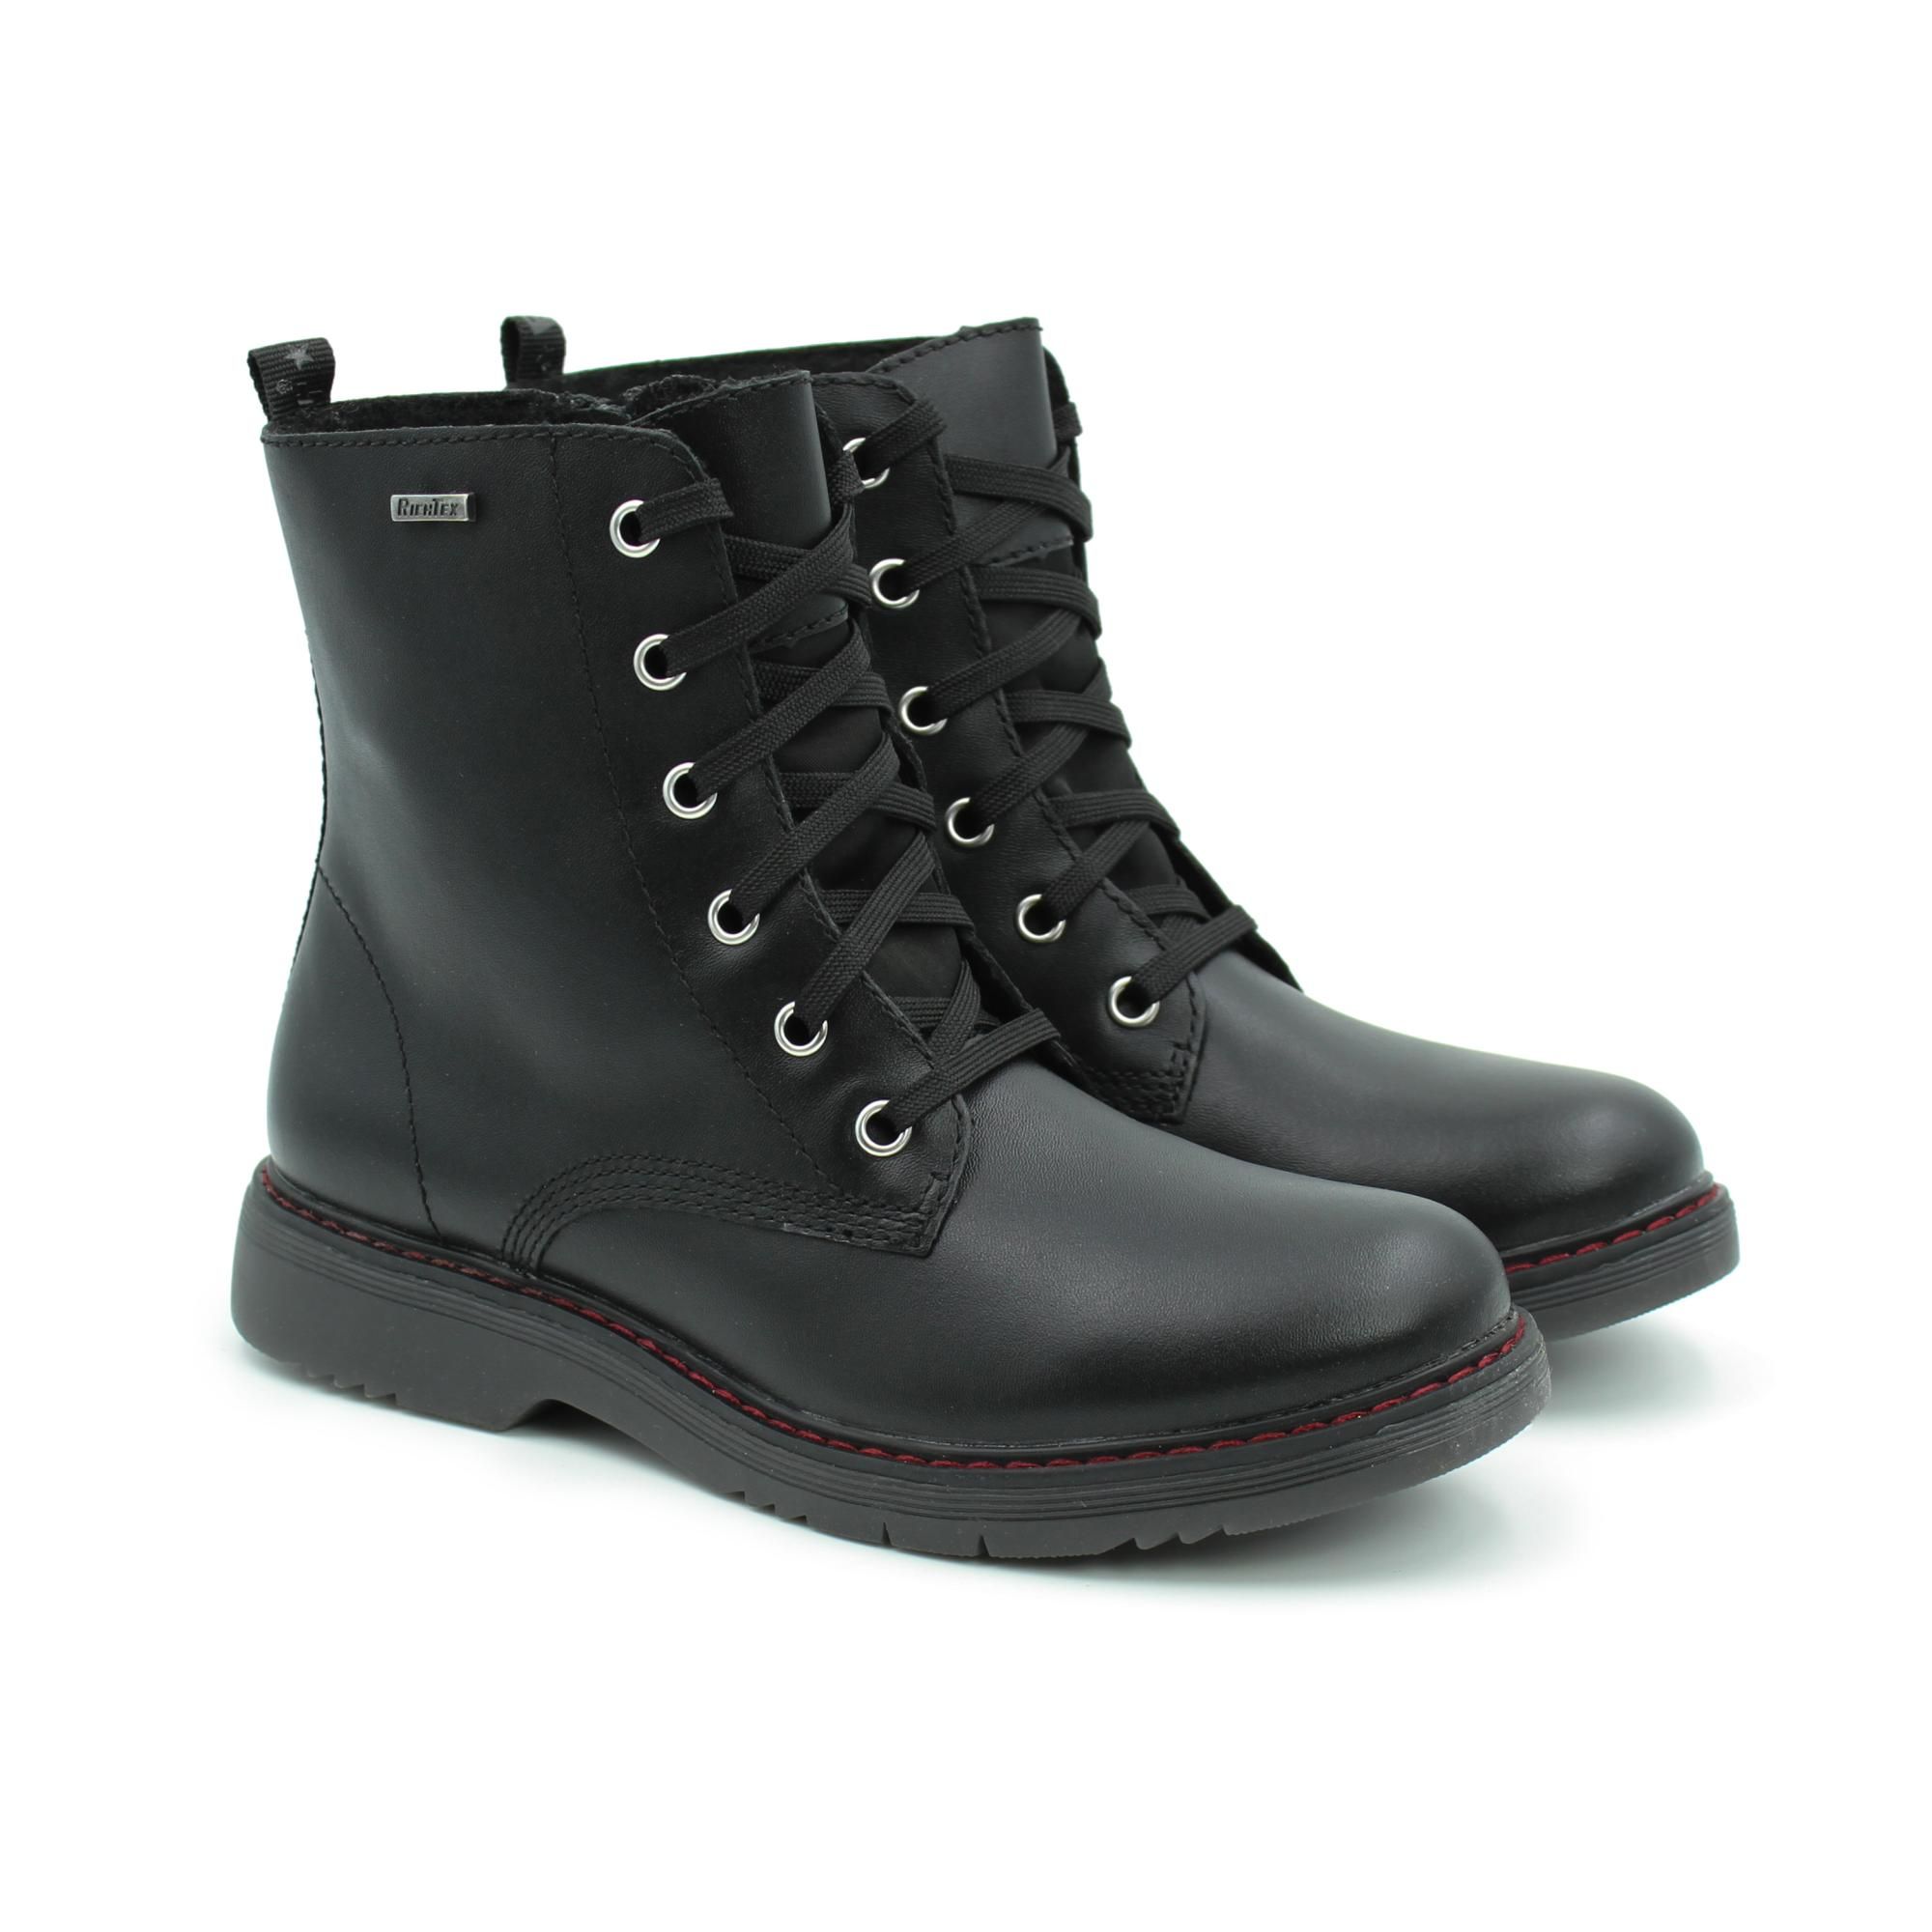 Ботинки Richter Prisma boot 4600-2131-9900 цв. черный р. 37